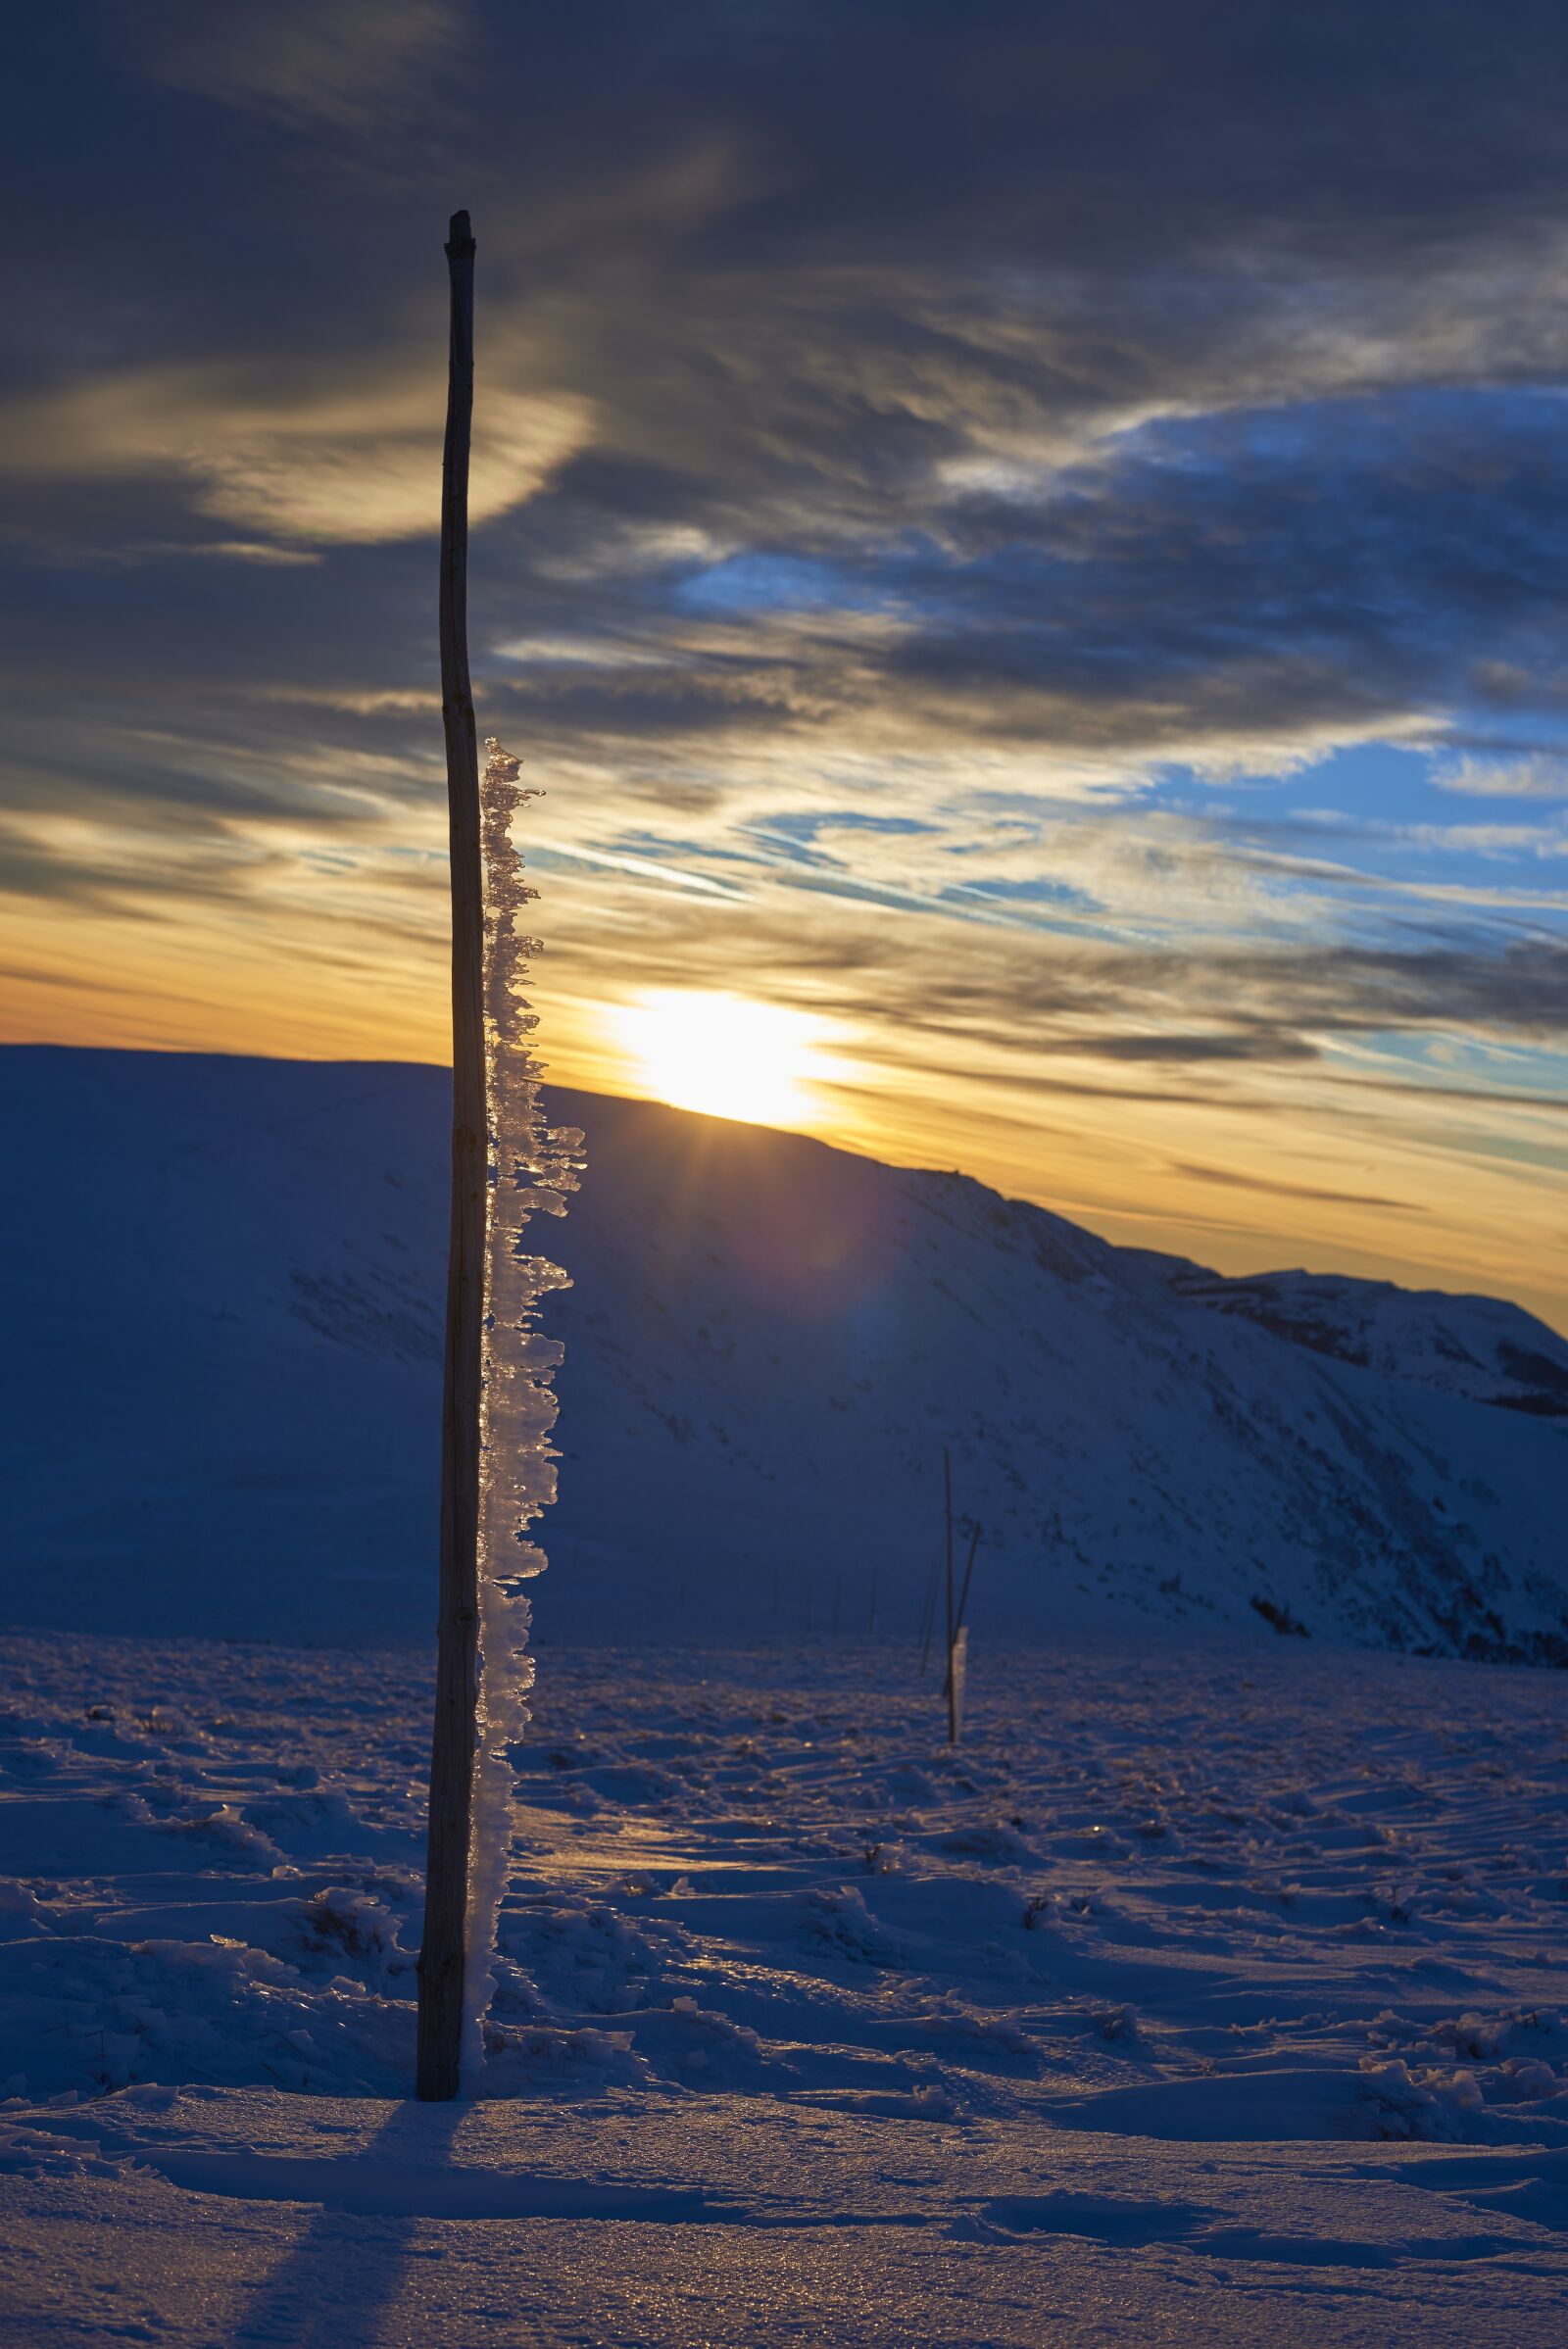 Nikon AF-S Nikkor 50mm F1.4G sample photo. Sunset, winter, ice photography